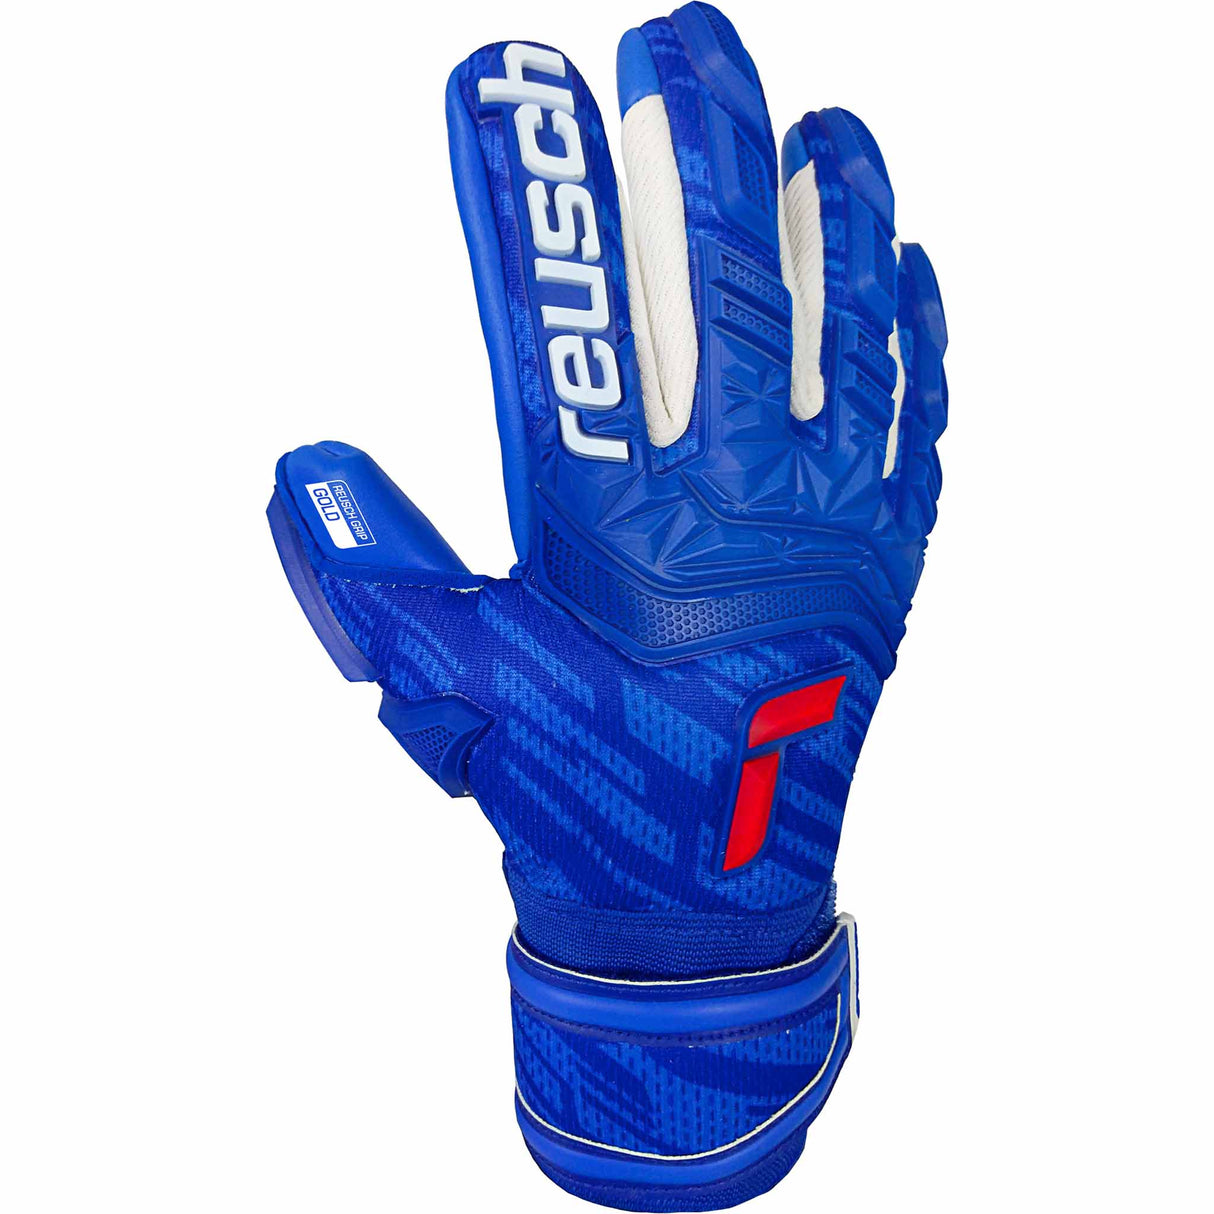 Reusch Attrakt Freegel Gold Finger Support junior gants de gardien de soccer - Bleu / Blanc